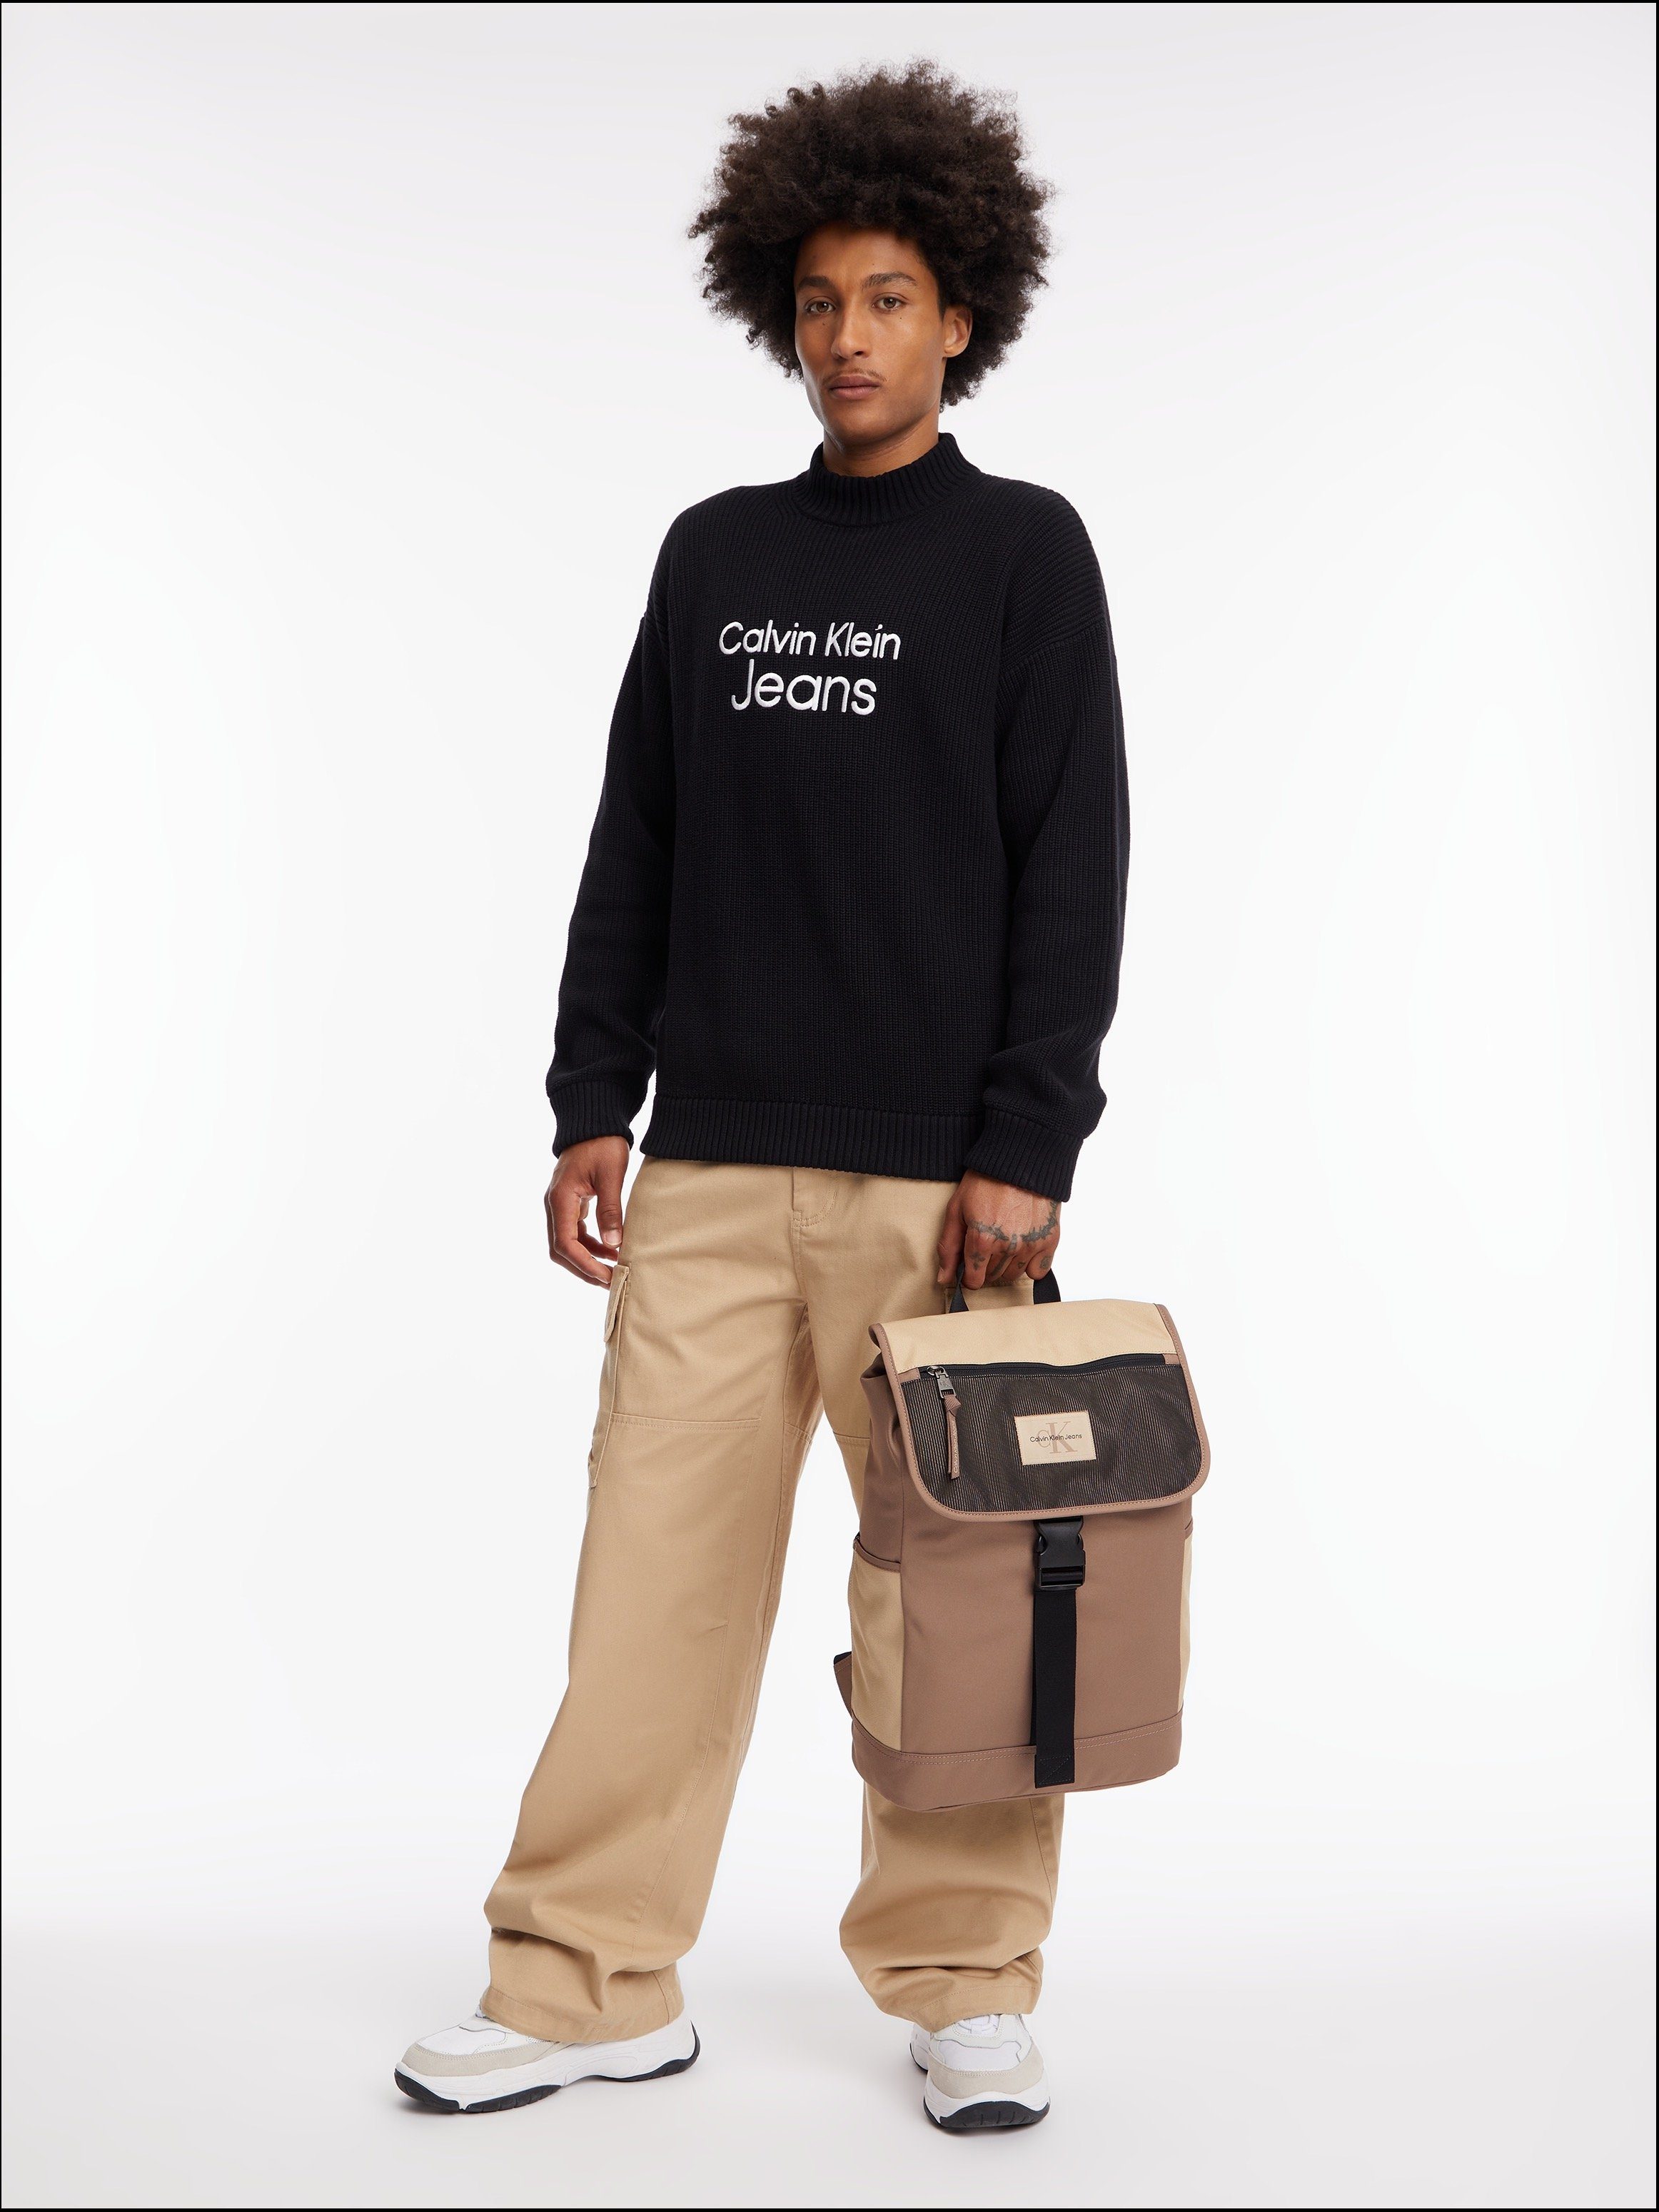 Calvin Klein Jeans Block Travertine ESSENTIALS CB, SPORT Rücken FLAP gepolstertem mit Cityrucksack BP43